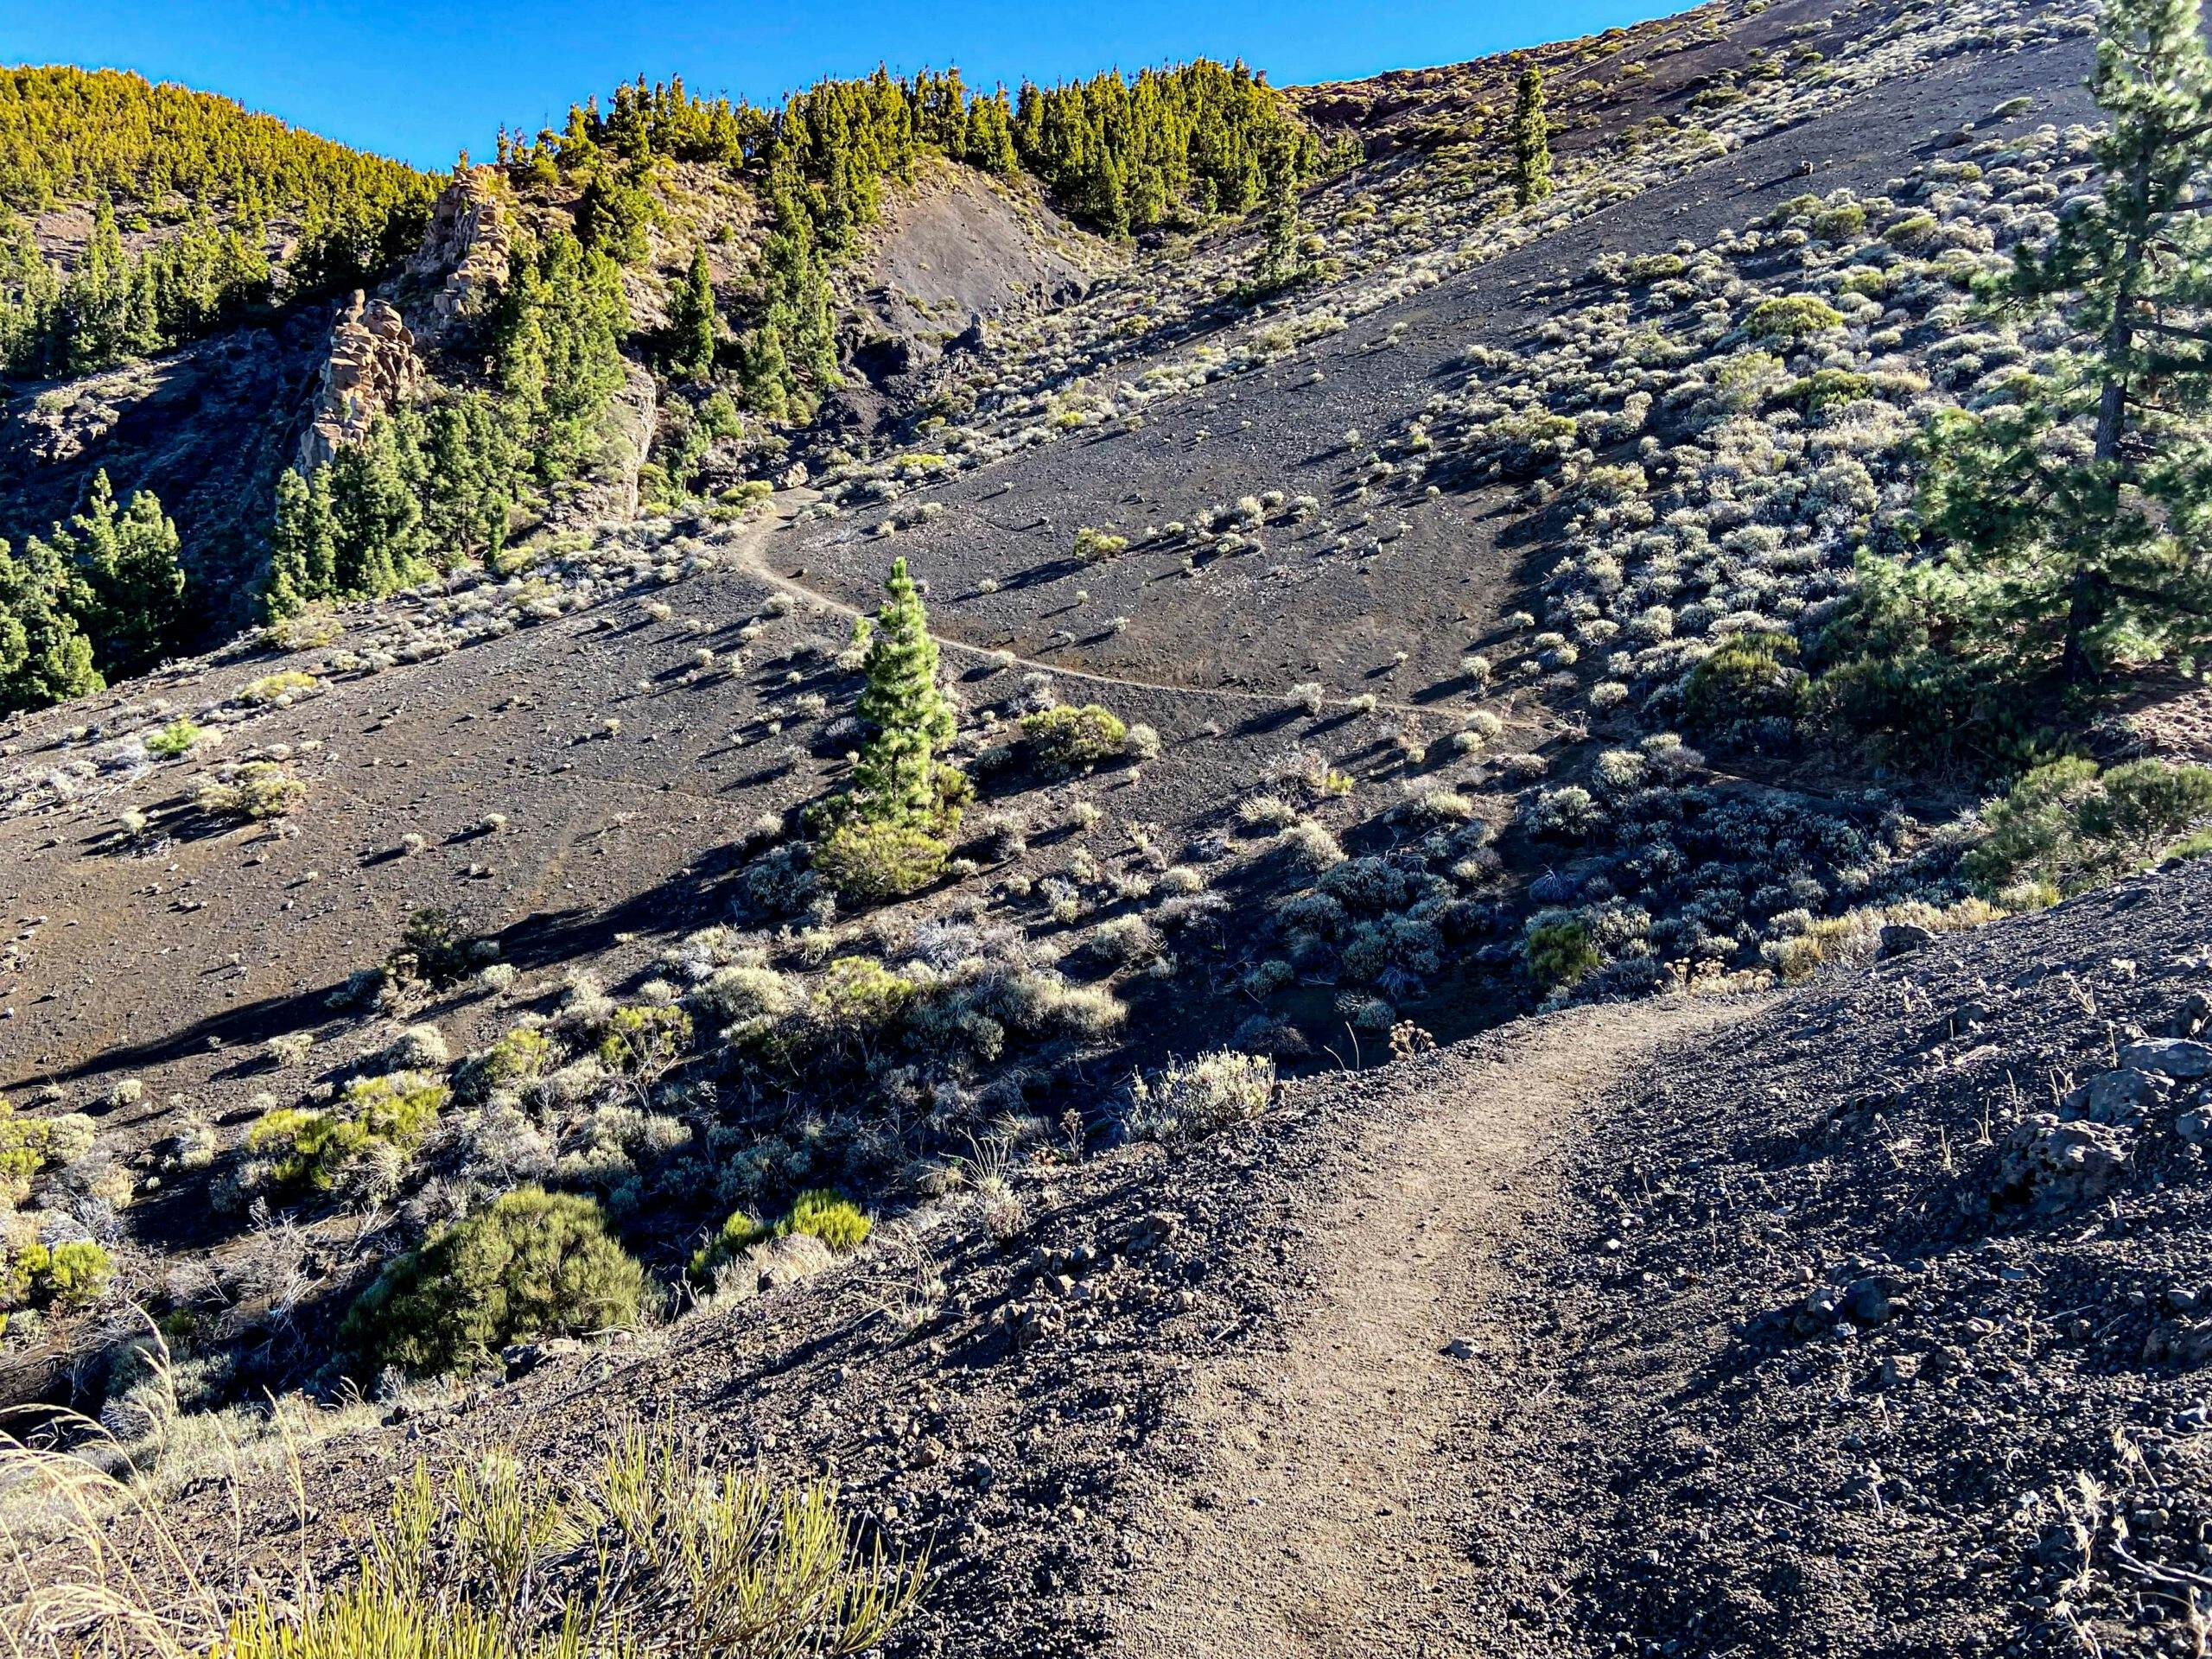 Ruta de senderismo por la ladera sobre arena y piedra volcánica